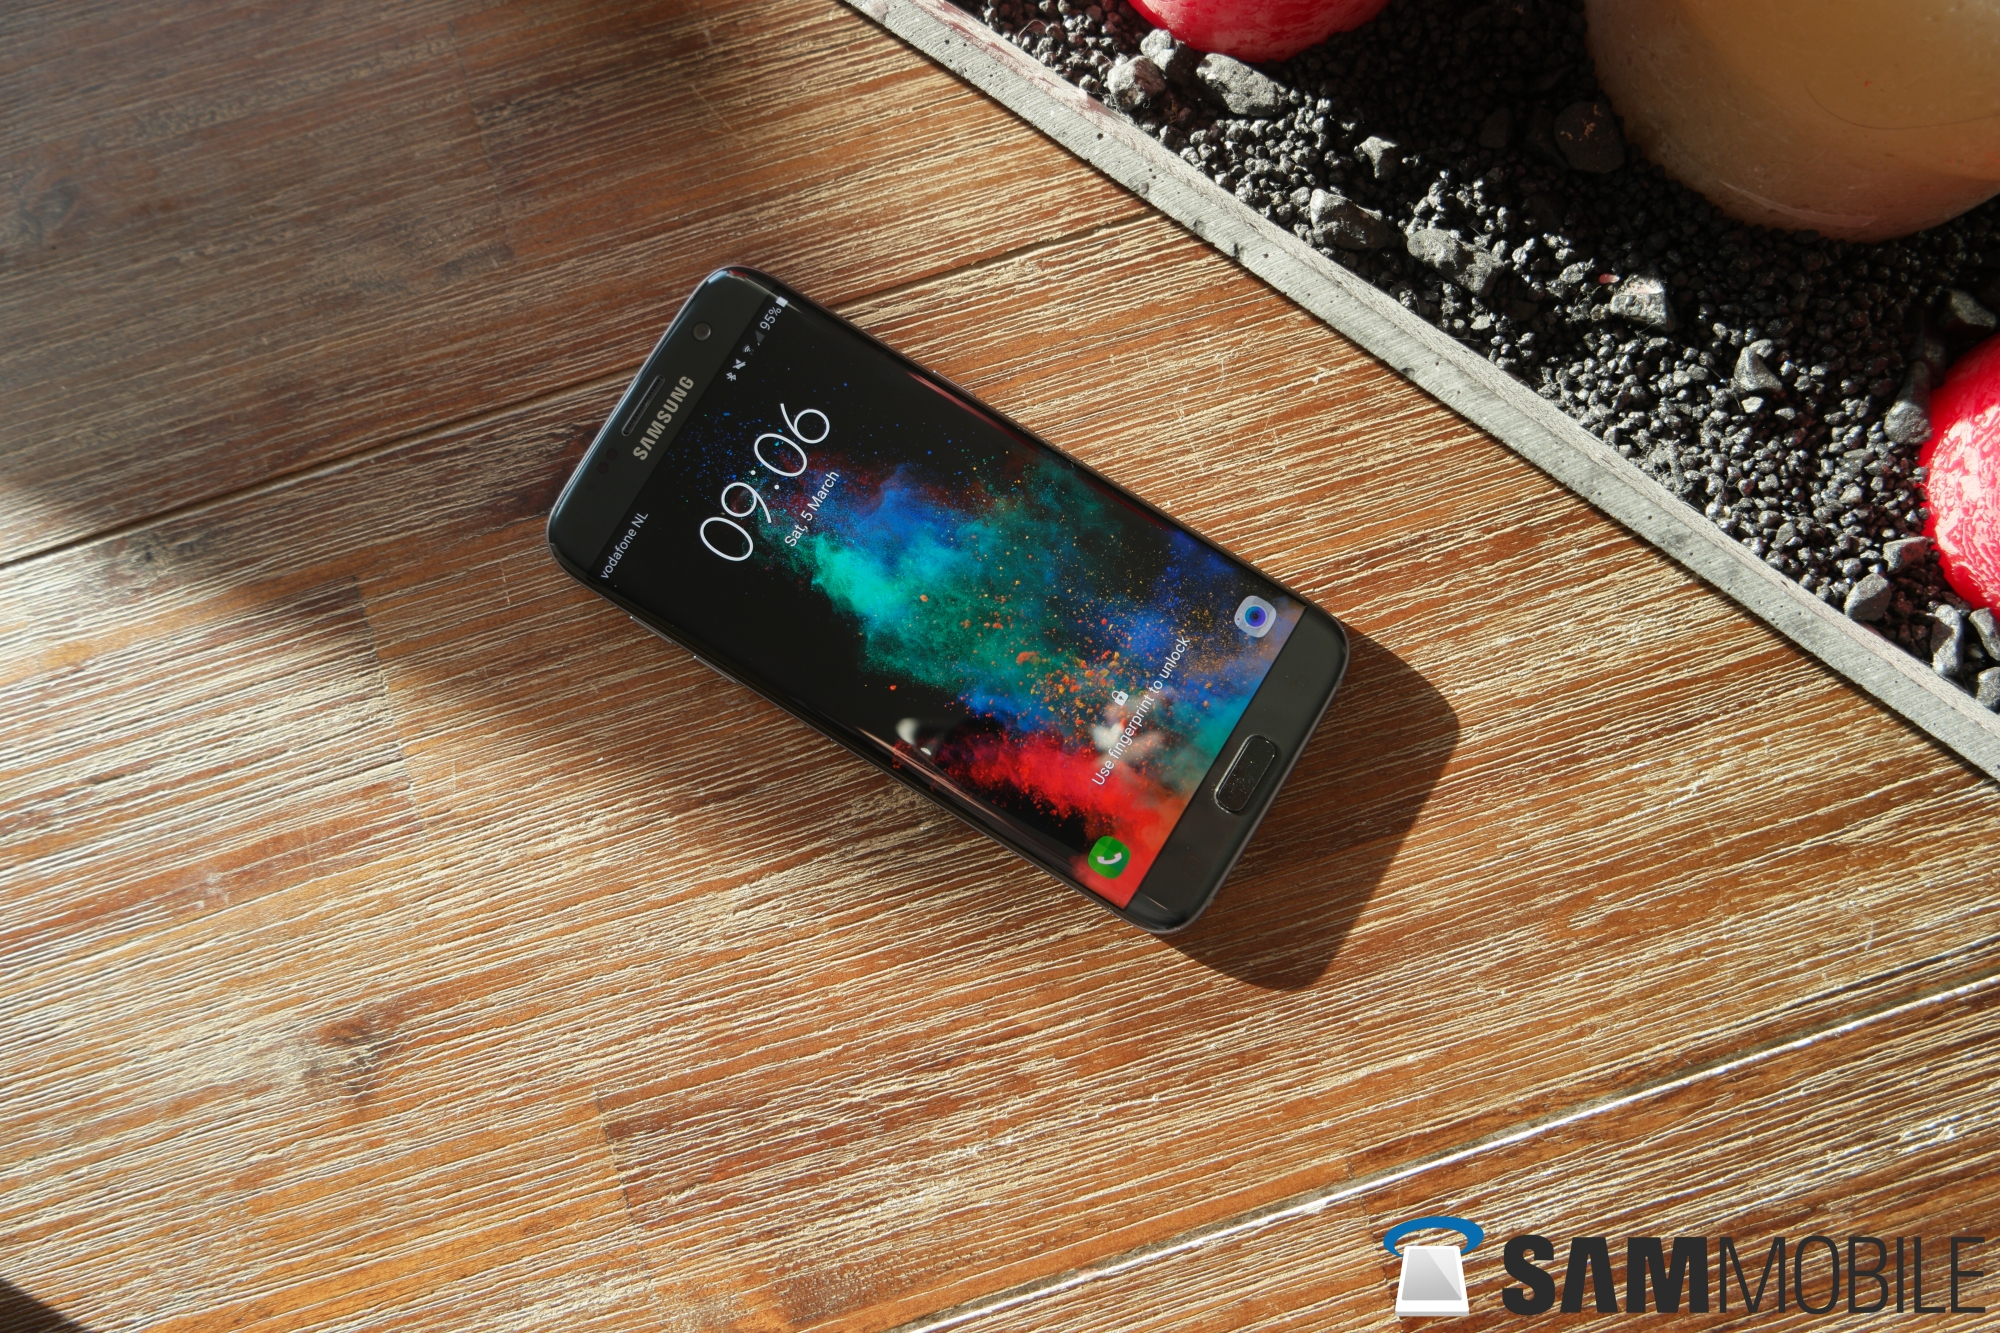 Onschuldig Memo Beneden afronden Samsung Galaxy S7 edge - SamMobile